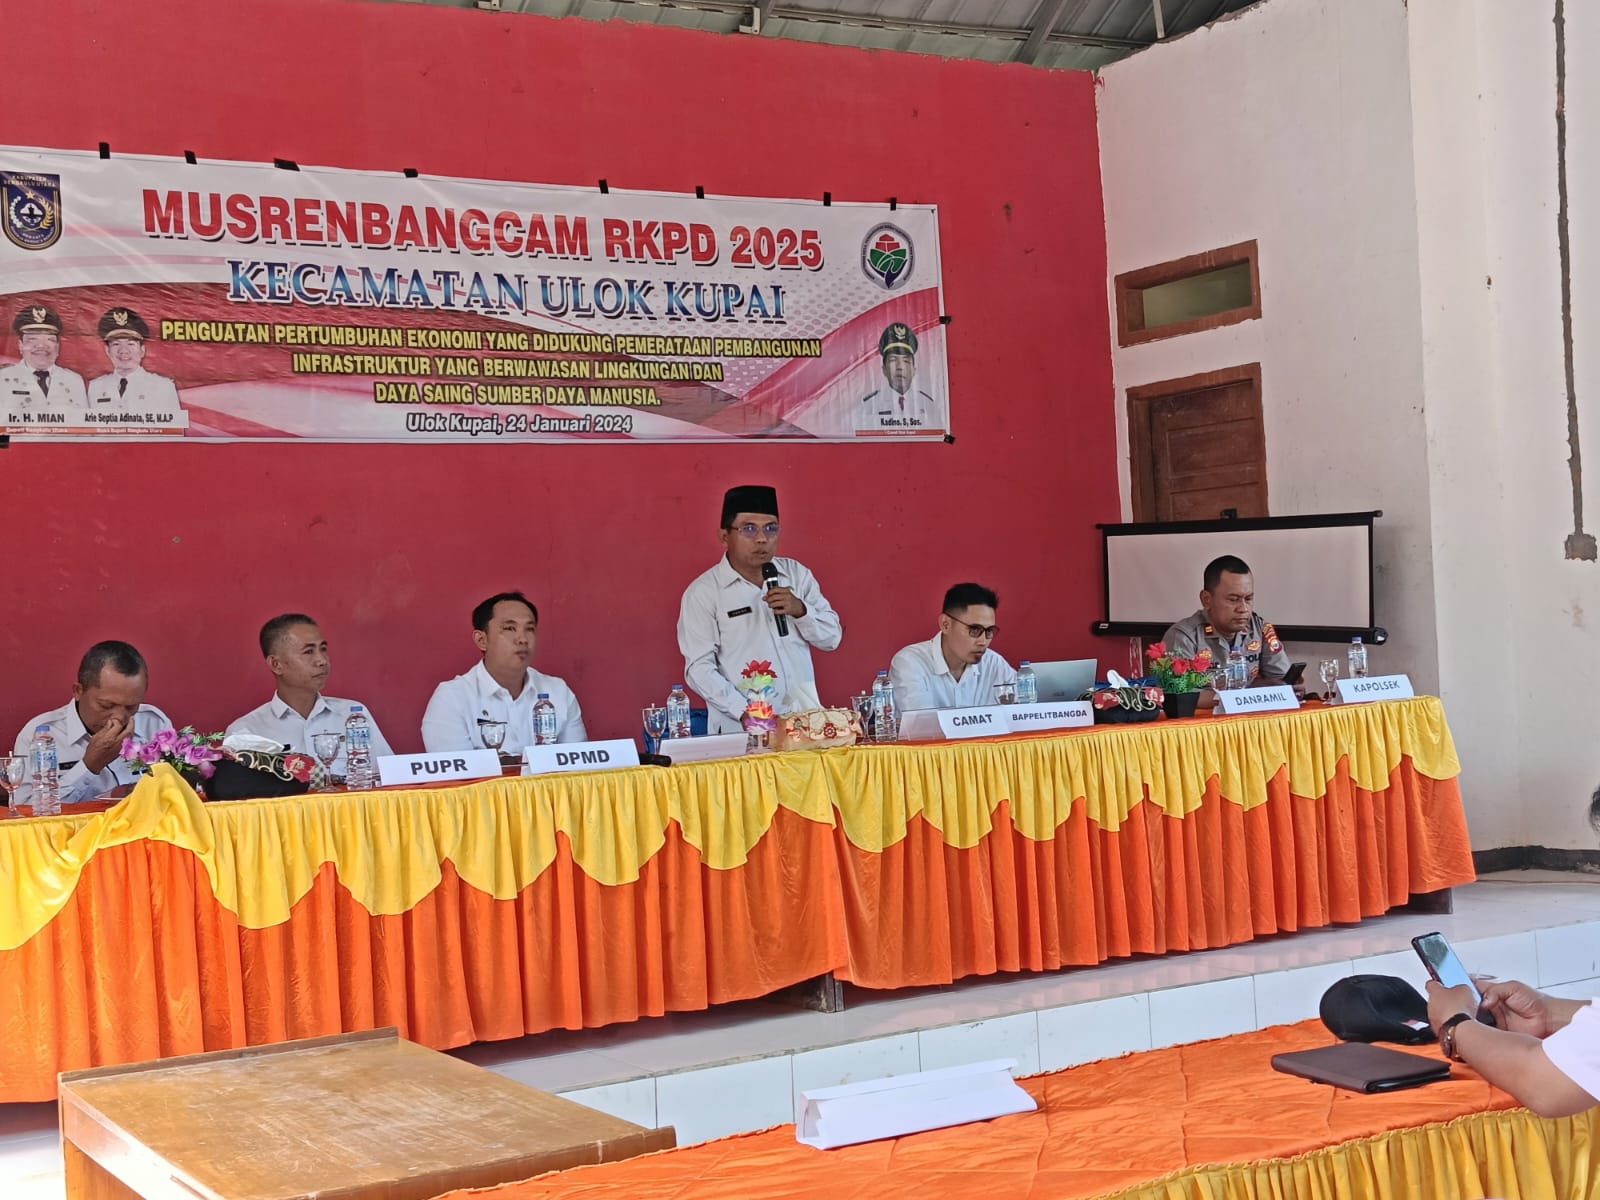 Dibuka oleh Camat, Musrenbangcam RKPD TA 2025 di Ulok Kupai Sukses